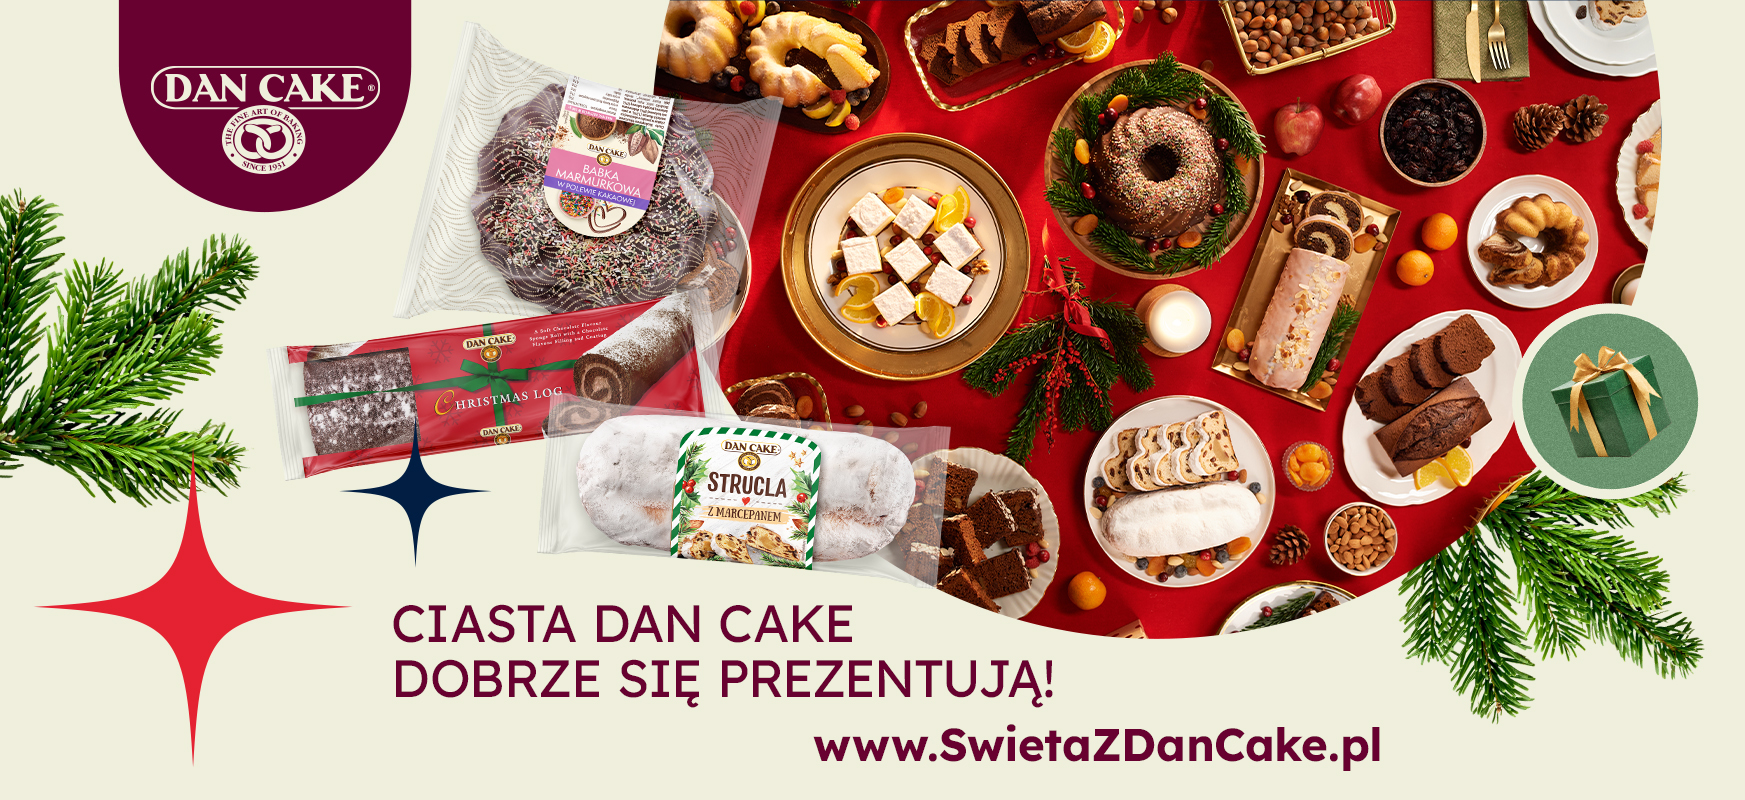 Startuje świąteczna kampania marki Dan Cake